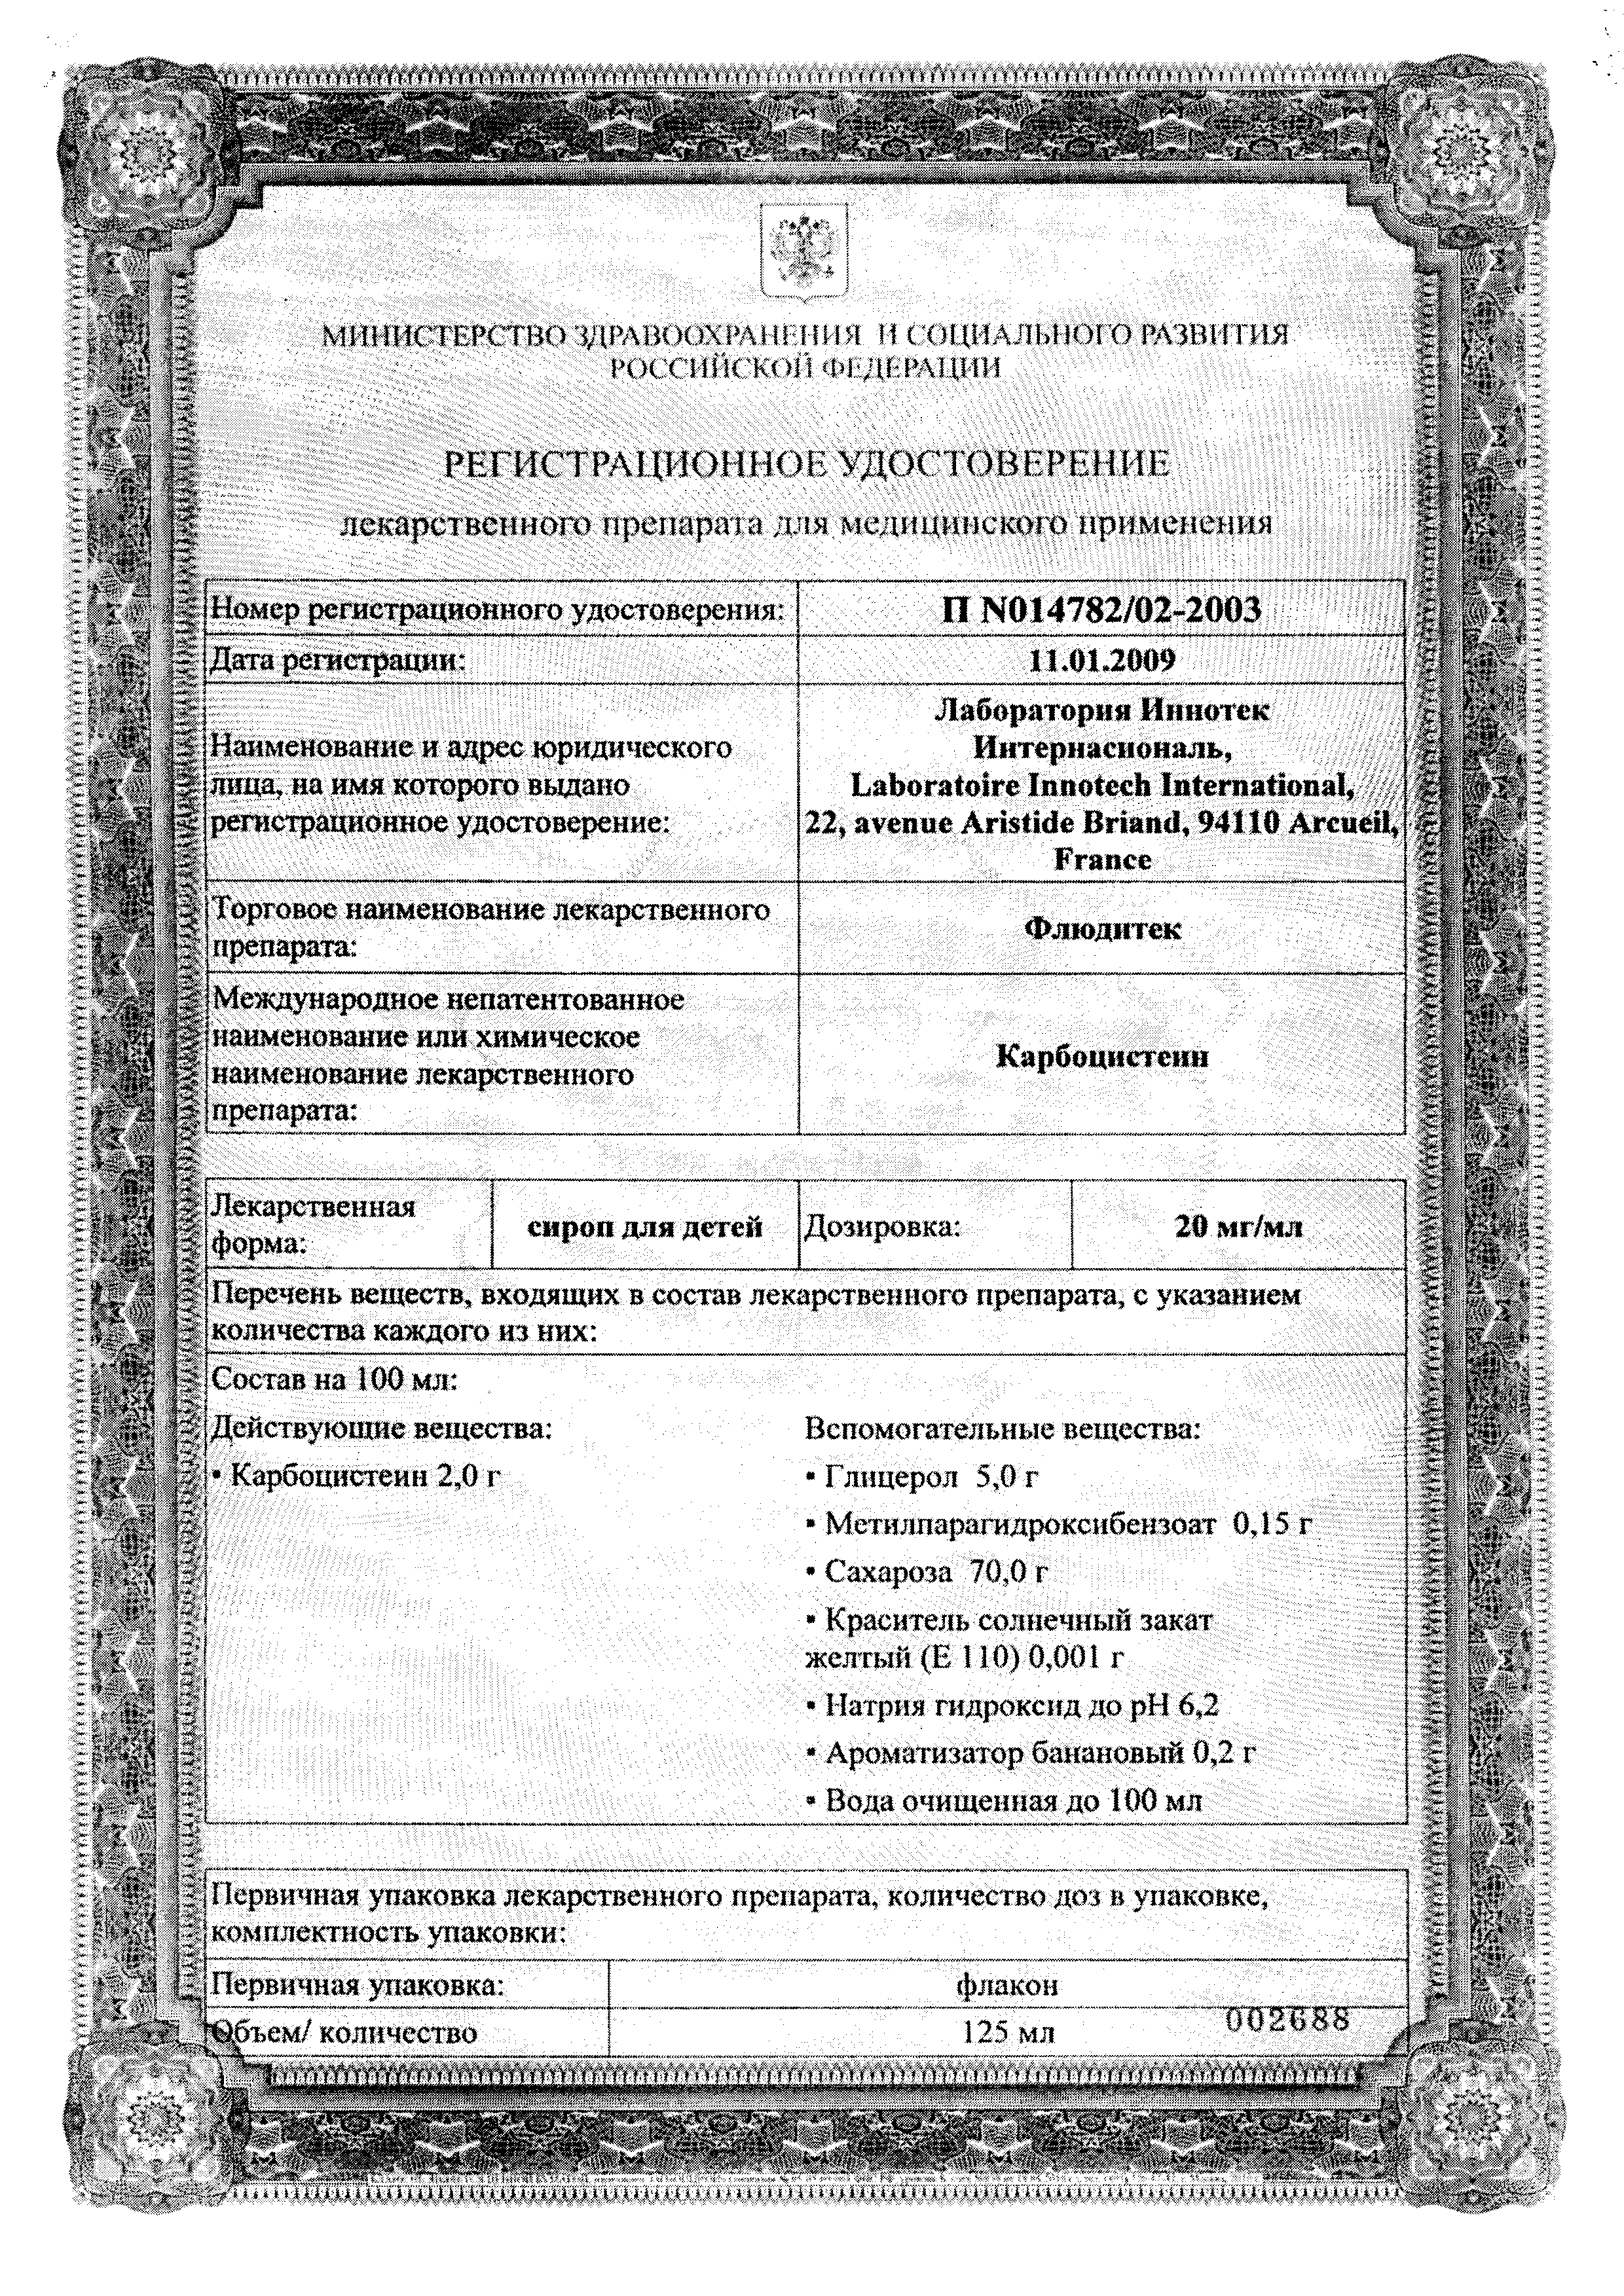 Флюдитек сертификат